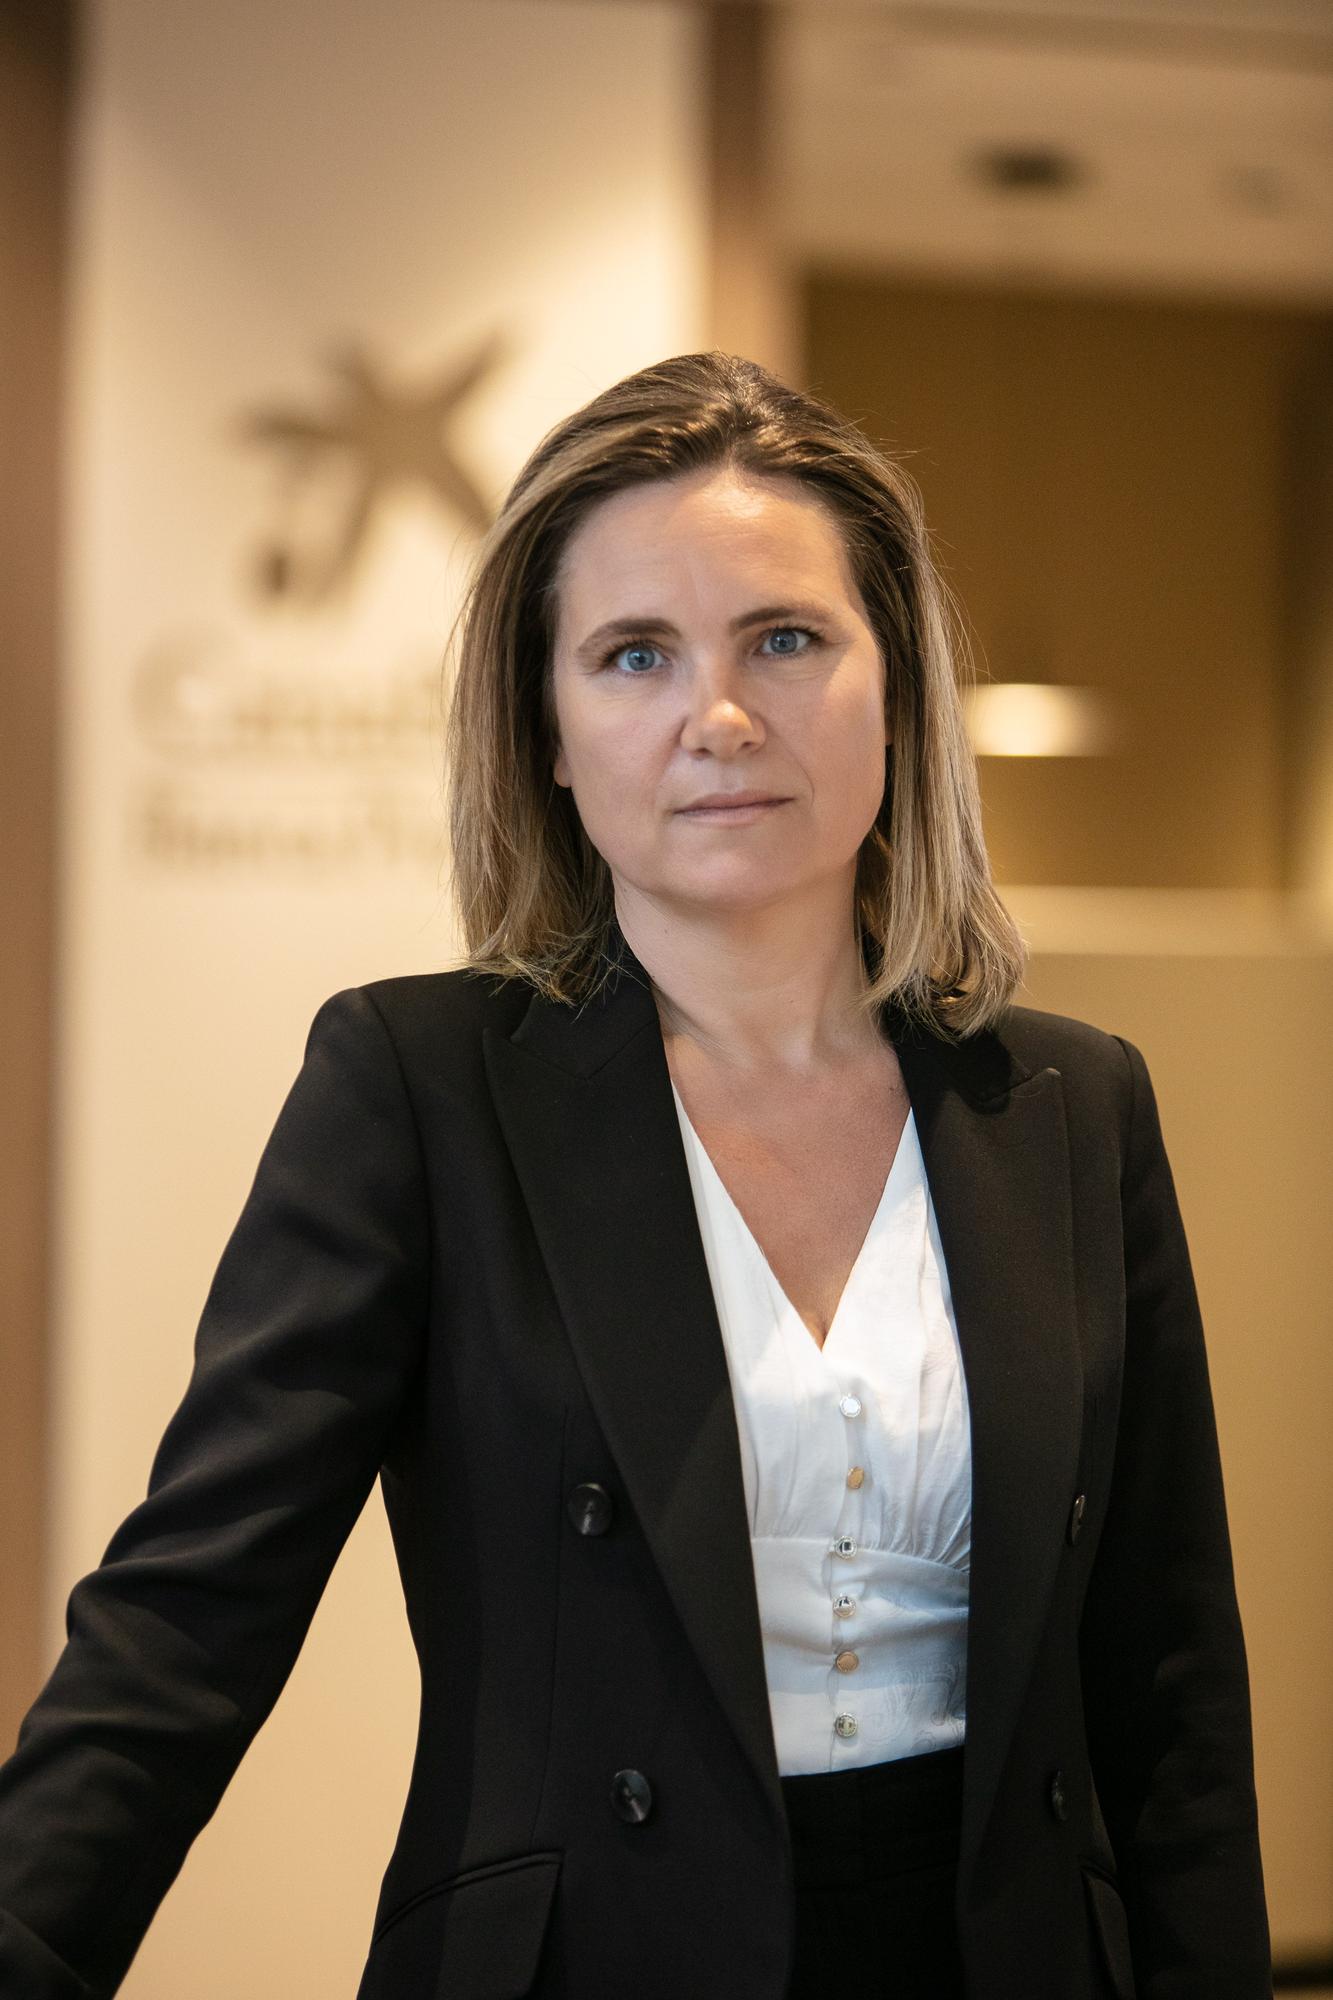 Gaëlle Le Dour  intervendrá como ponente en eWoman Ibiza el jueves 26 de mayo